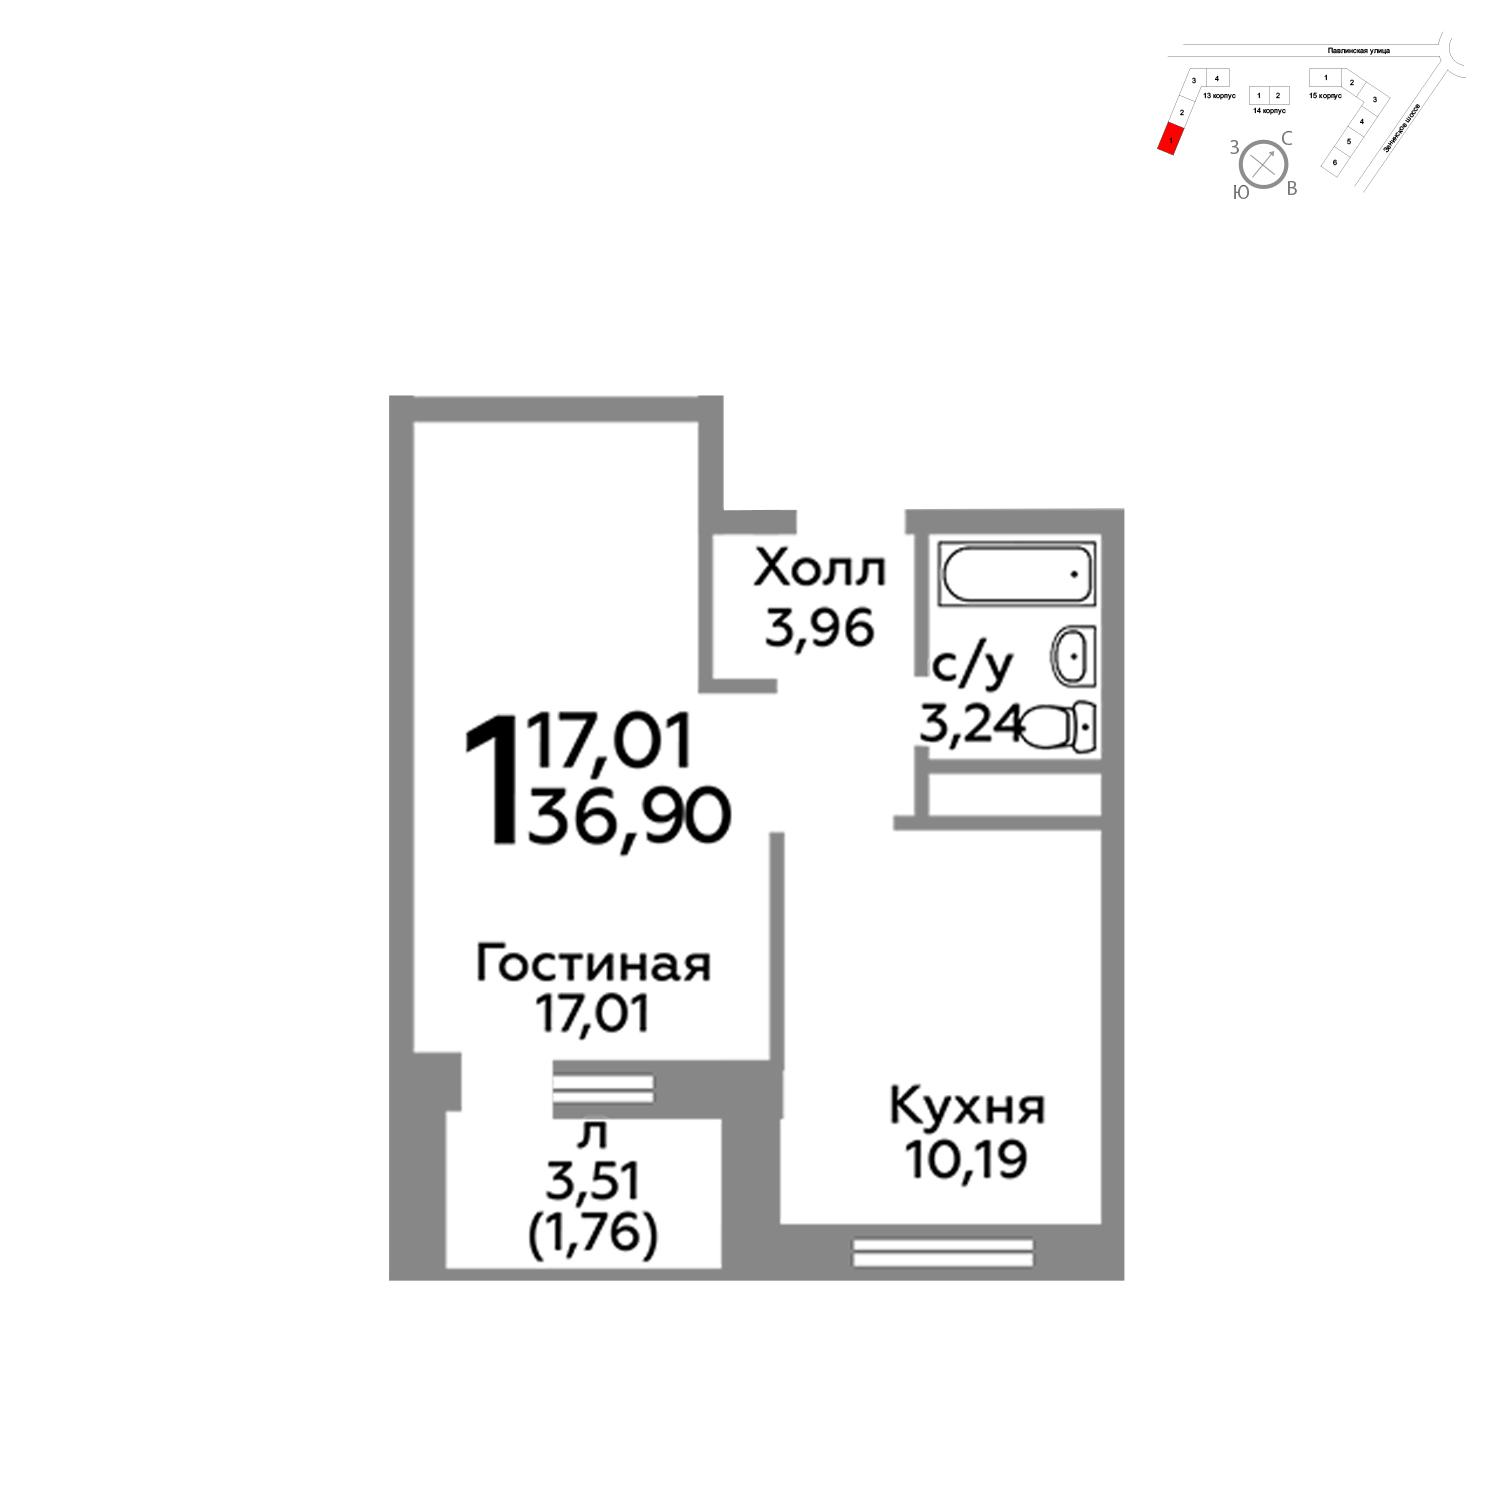 Продаётся 1-комнатная квартира в новостройке 35.9 кв.м. этаж 14/22 за 3 823 350 руб 